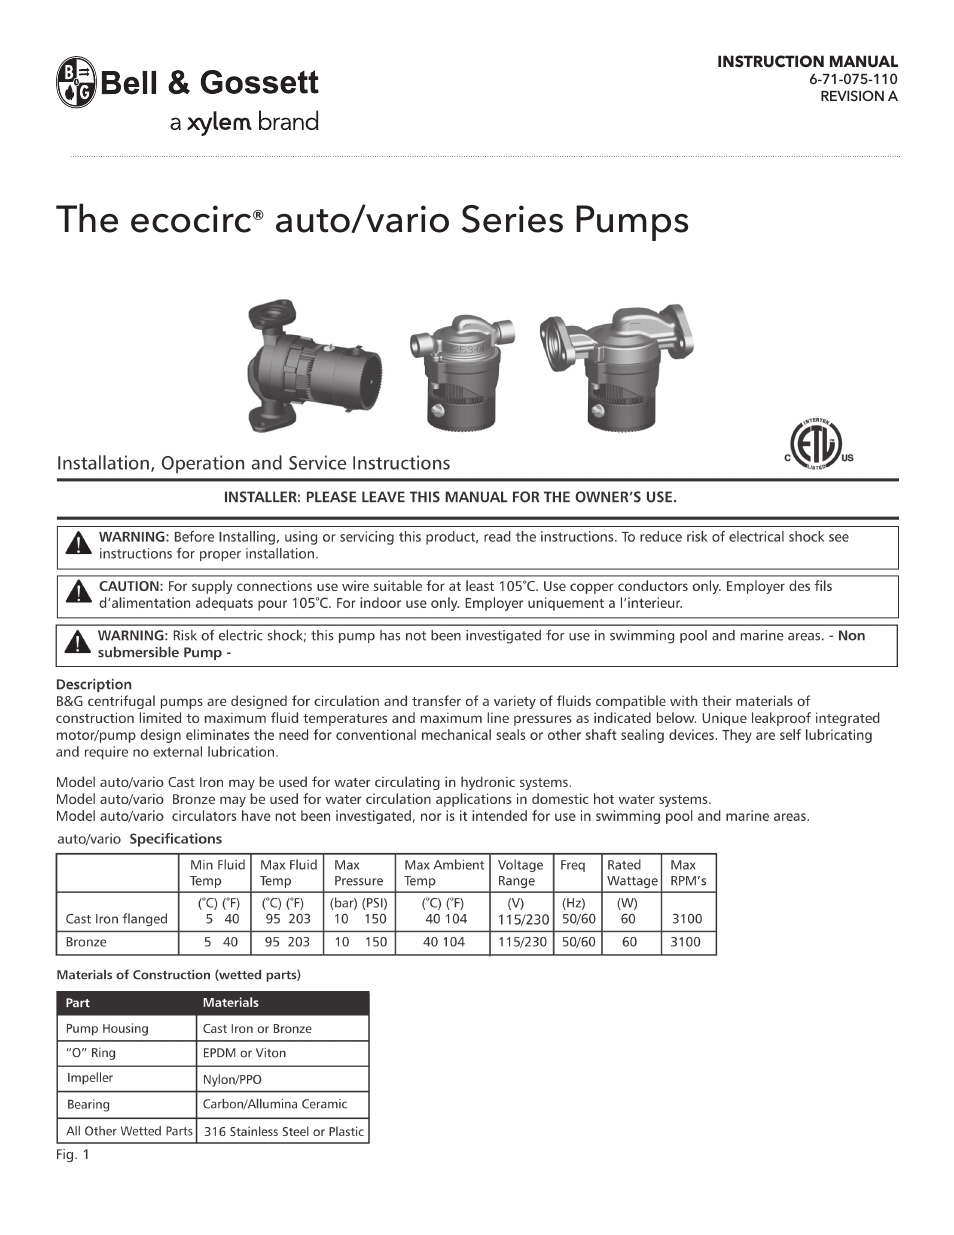 6 71 075 110A The ecocirc auto/vario Series Pumps